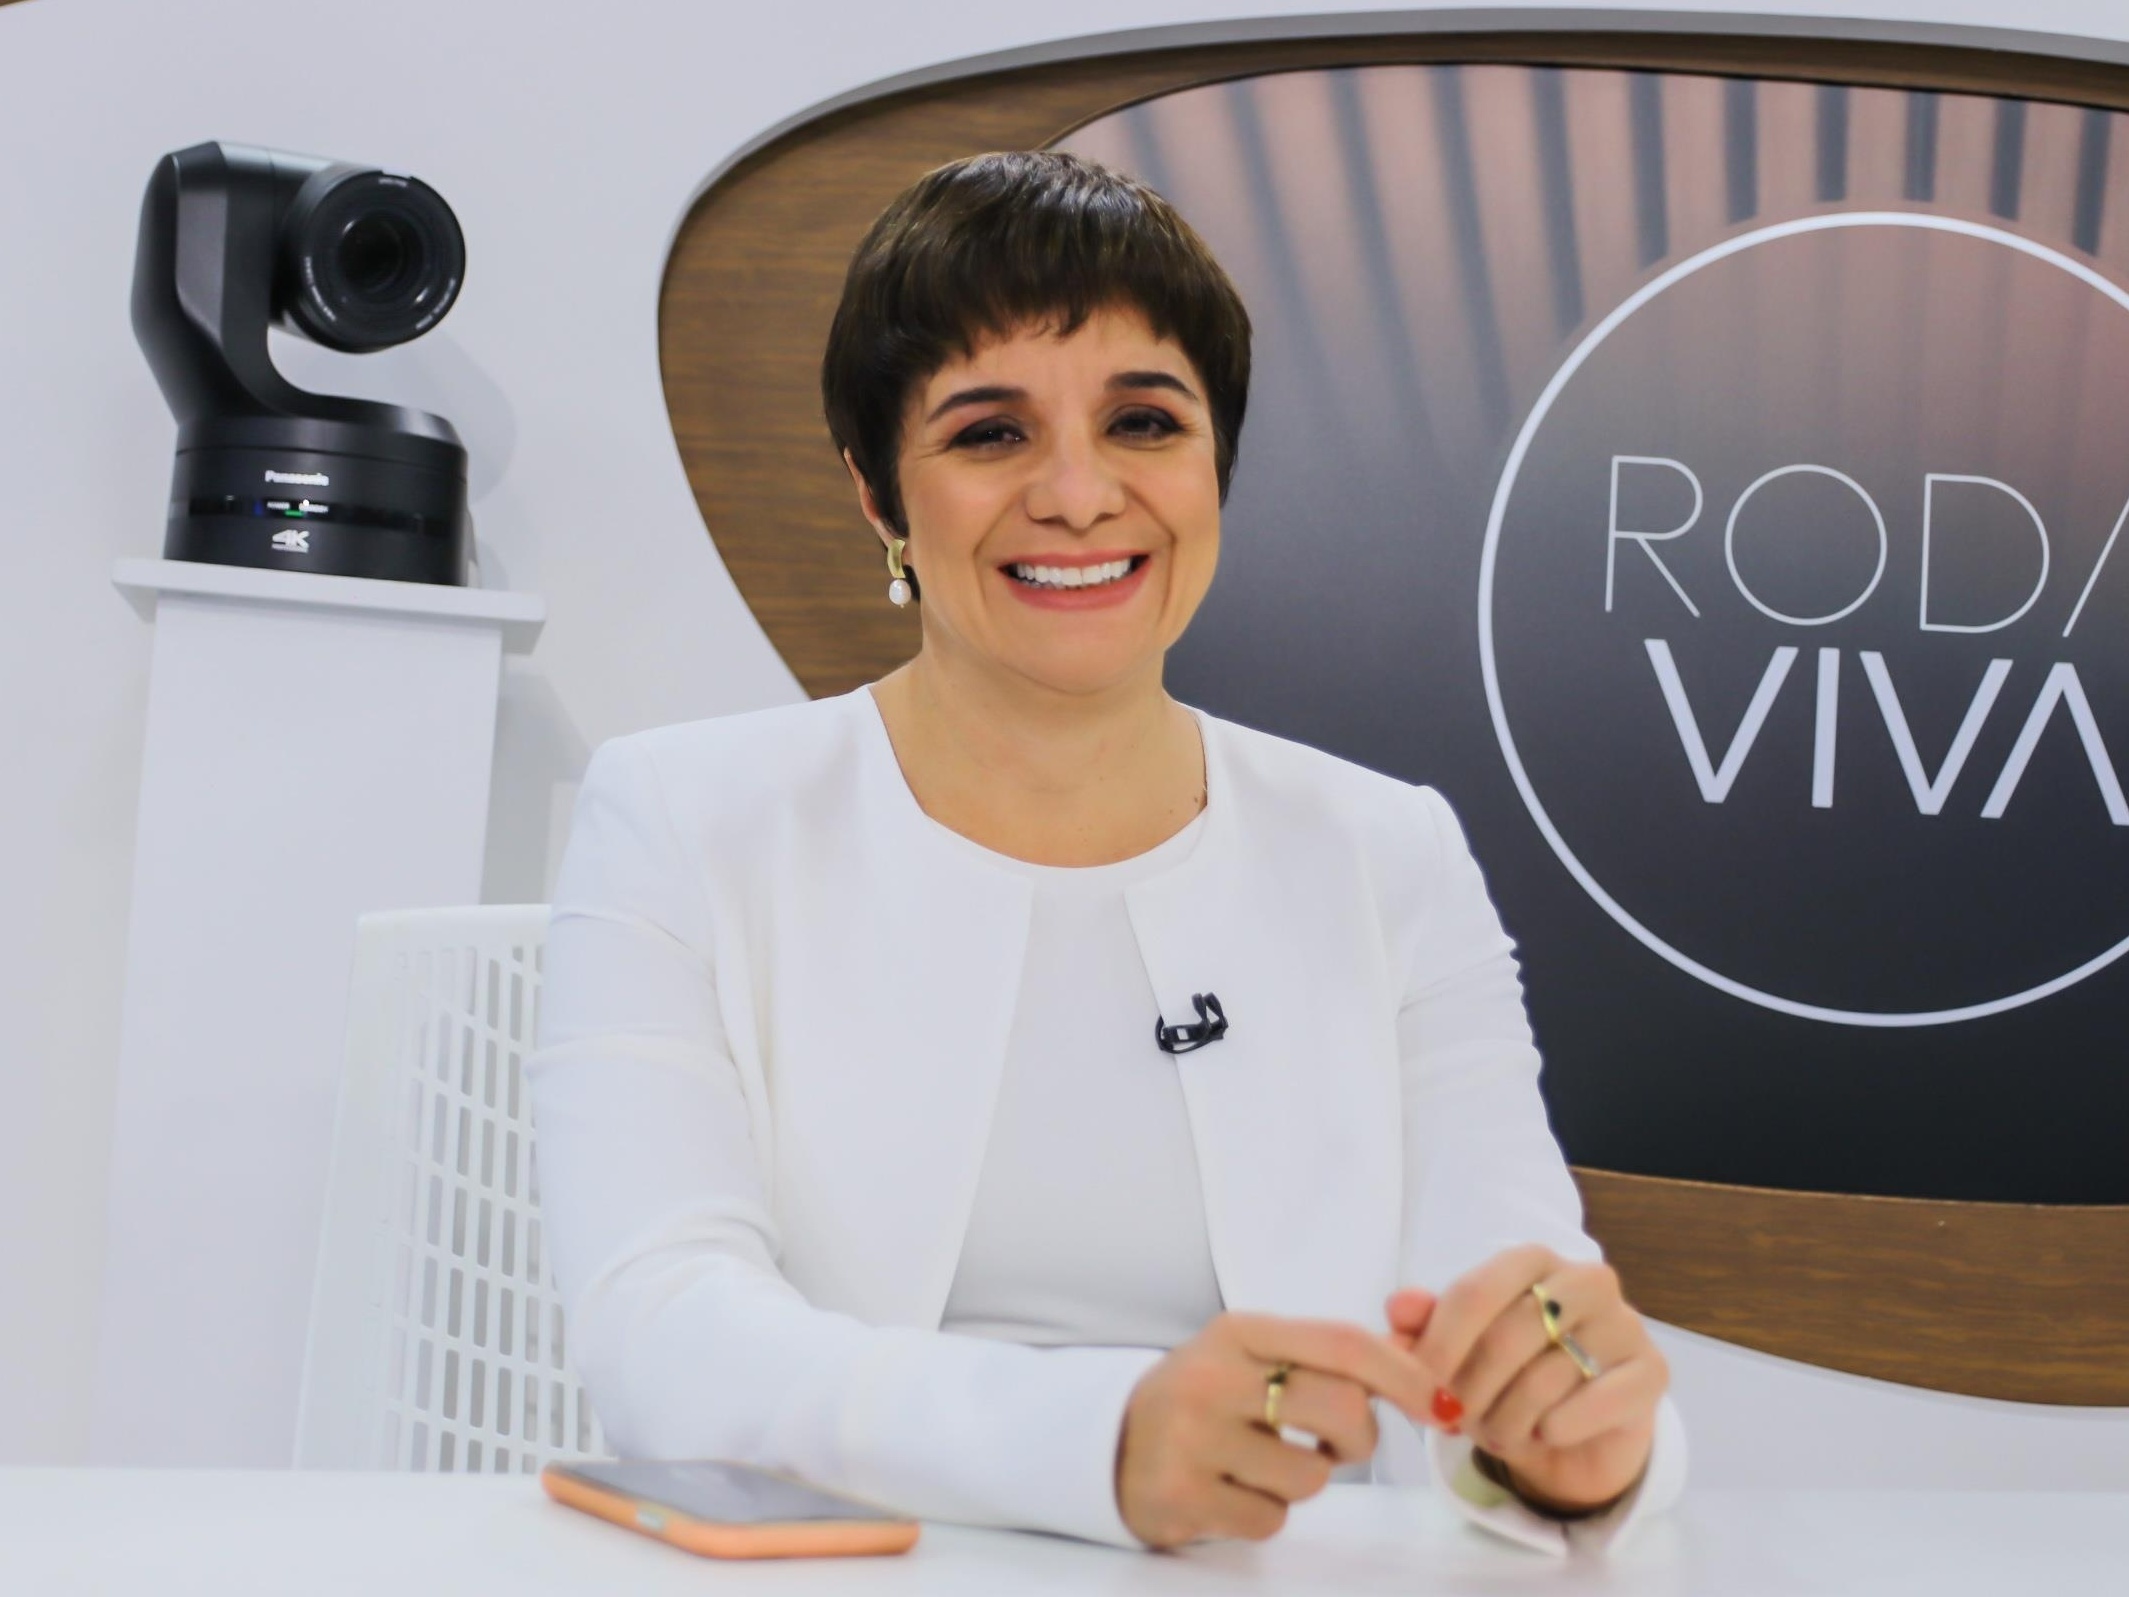 O Viva da TV Cultura: emissora lança três novos canais para